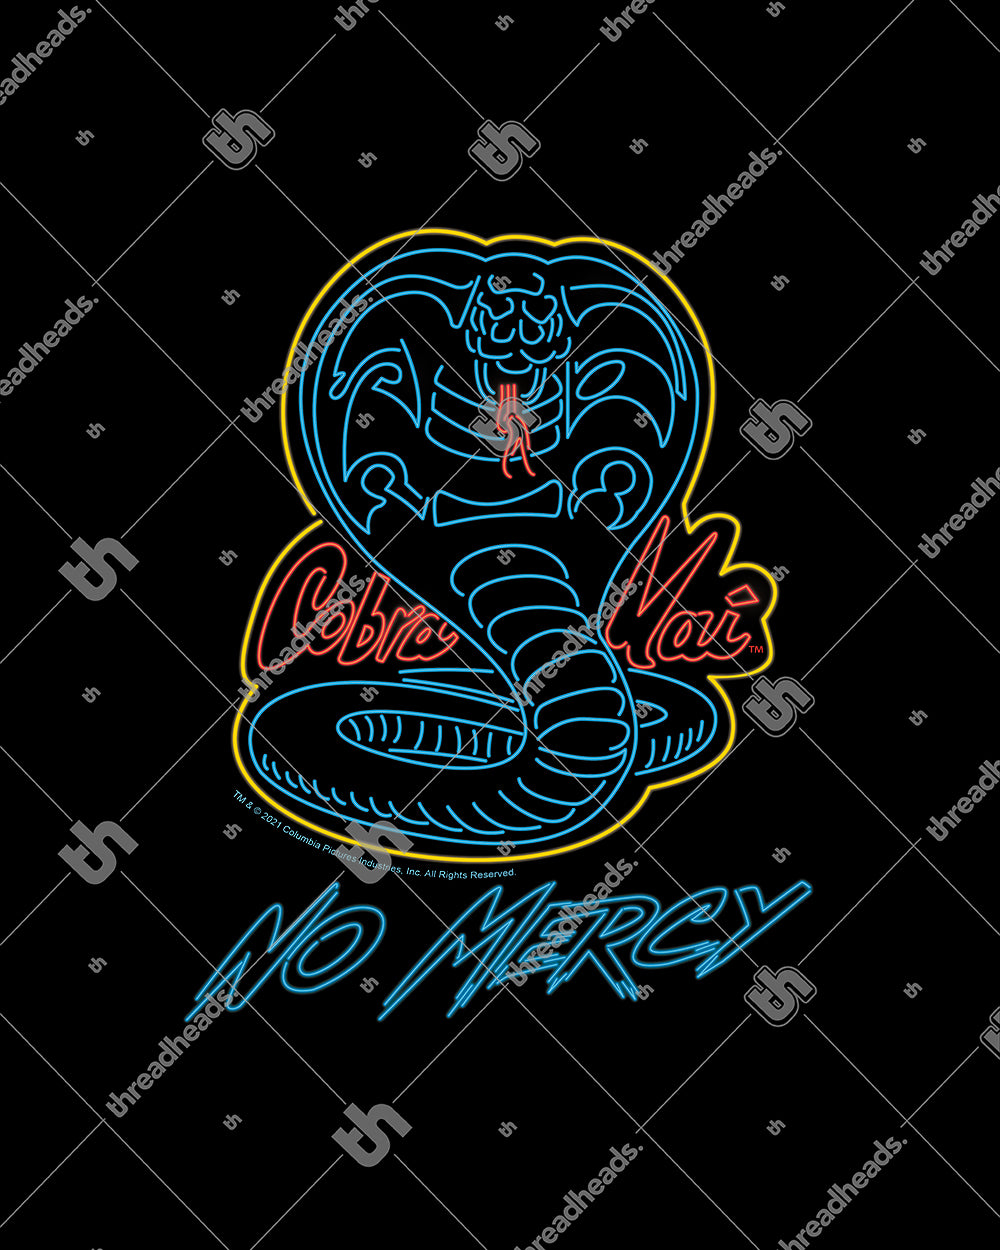 Cobra Kai No Mercy Neon Kids T-Shirt Australia Online #colour_black